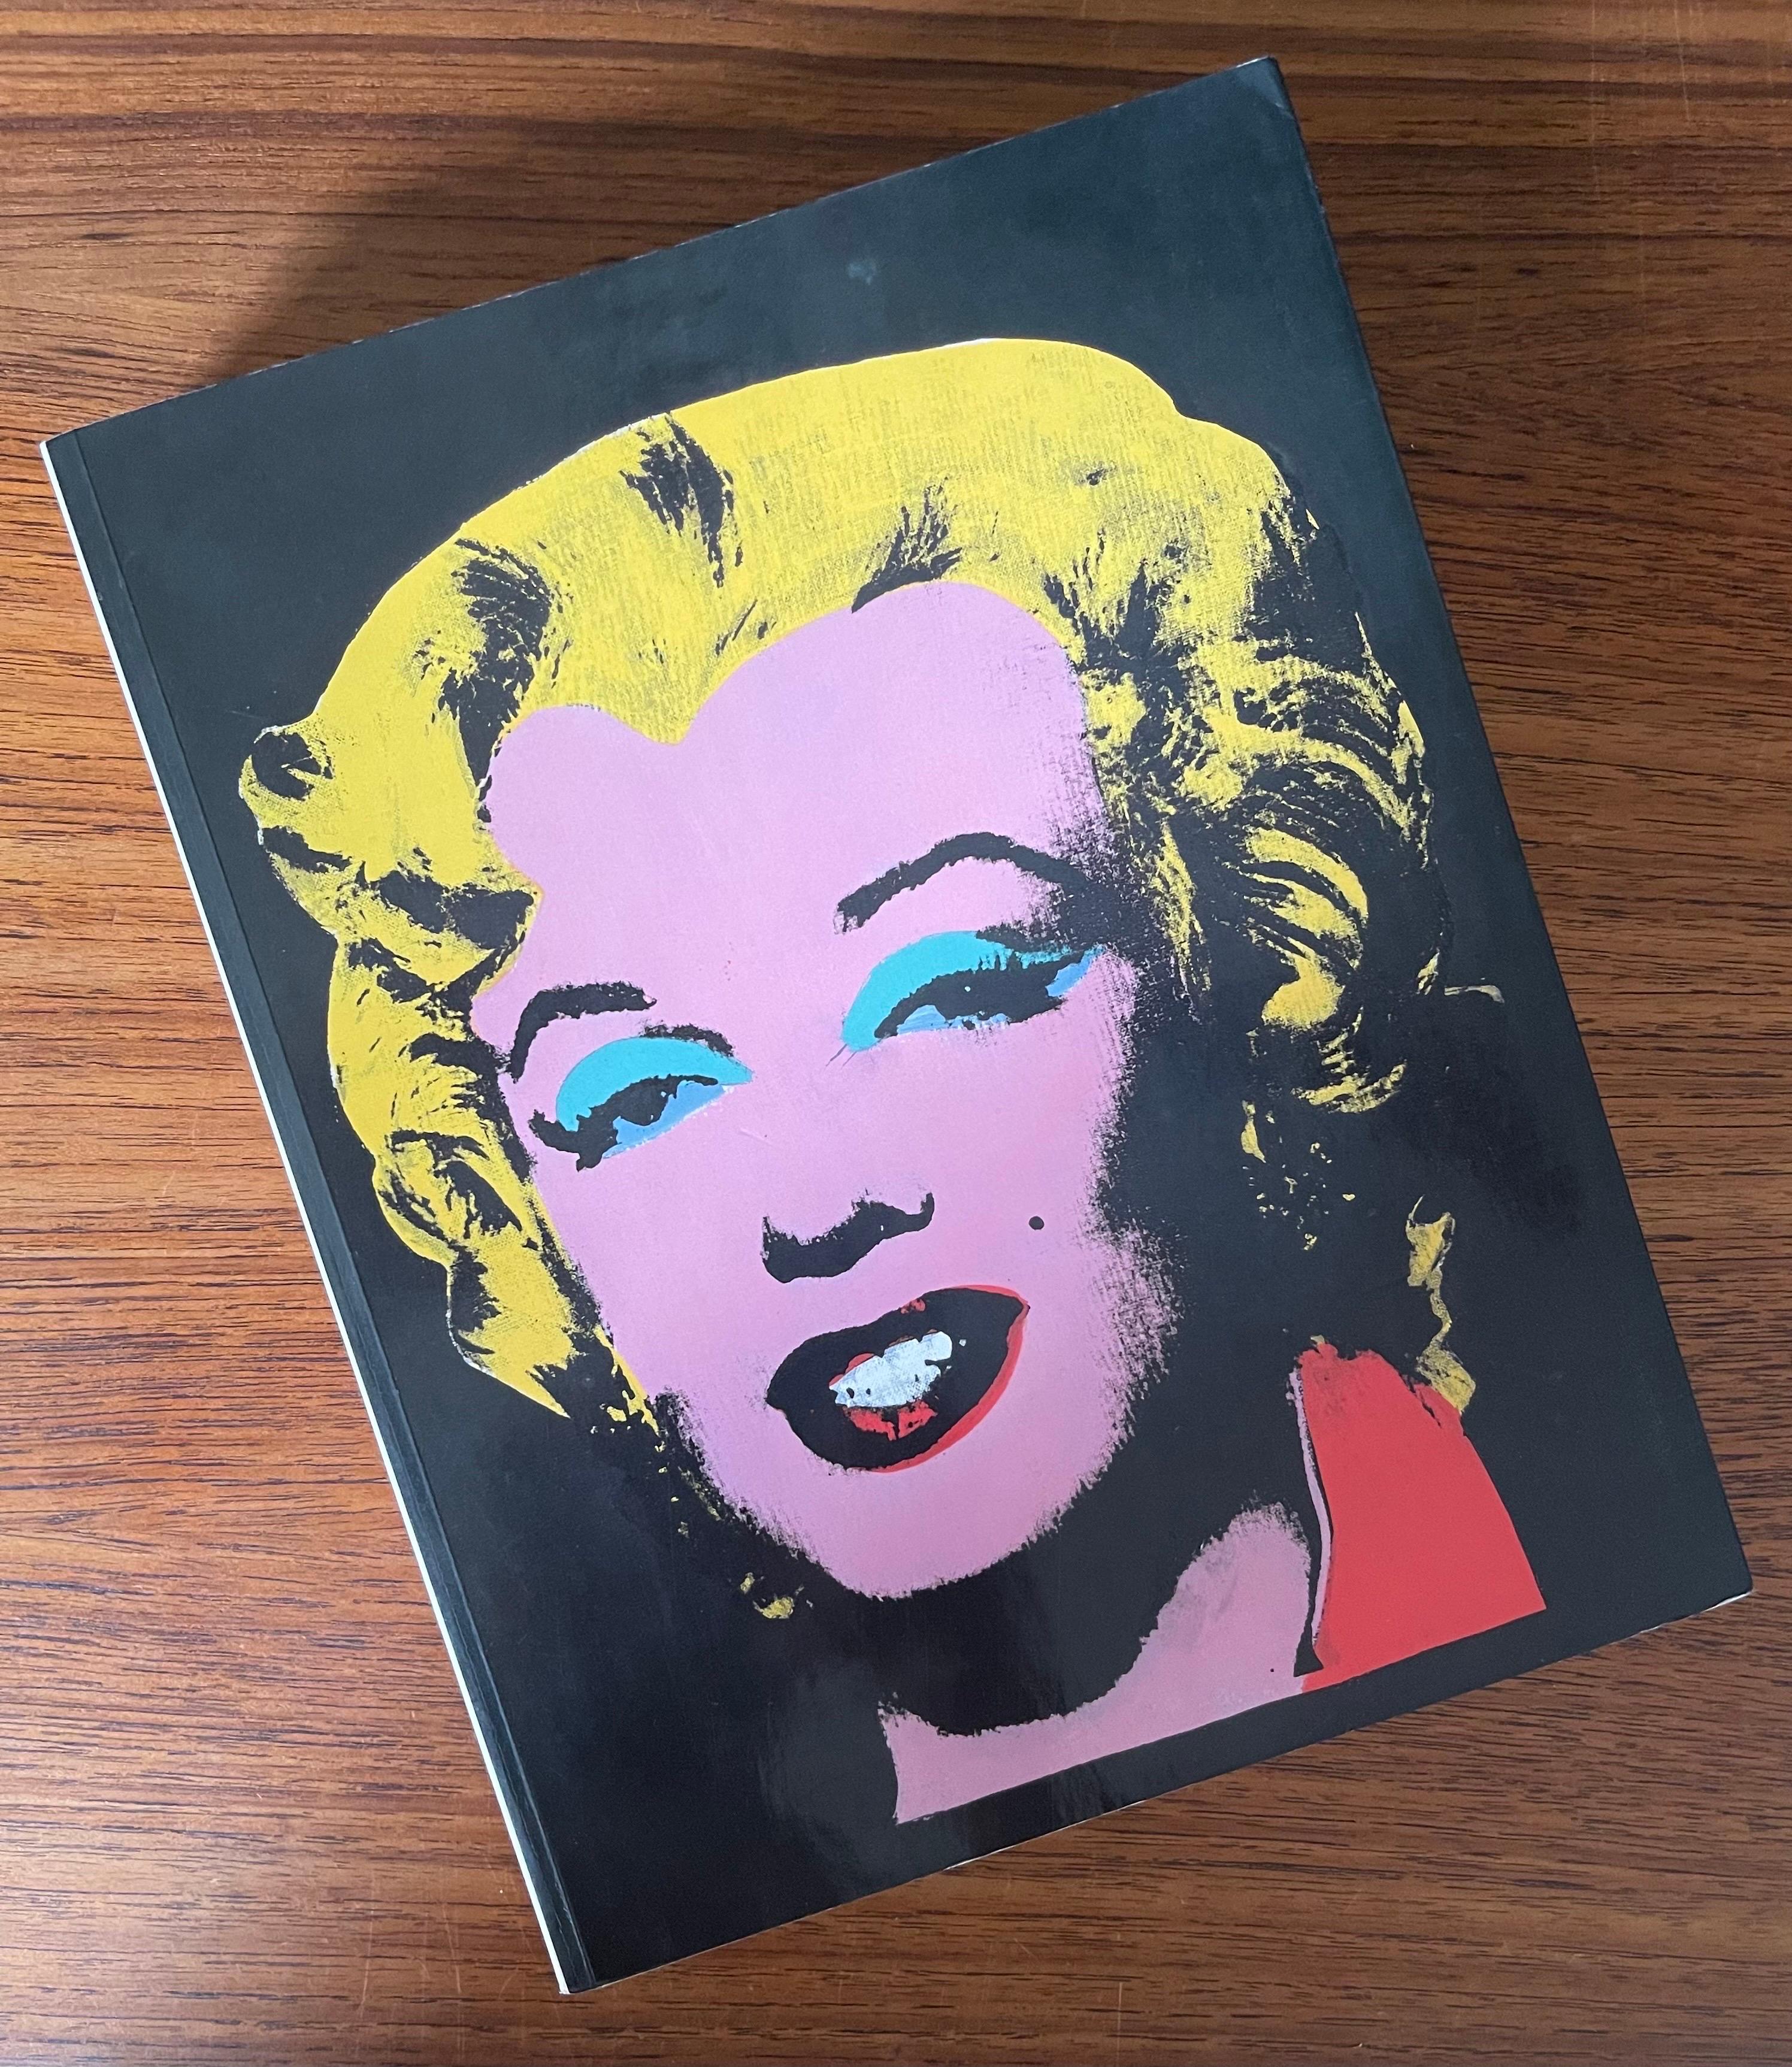 American Warhol Retrospective Art Book and Exhibit Programs Moca LA 2002 For Sale